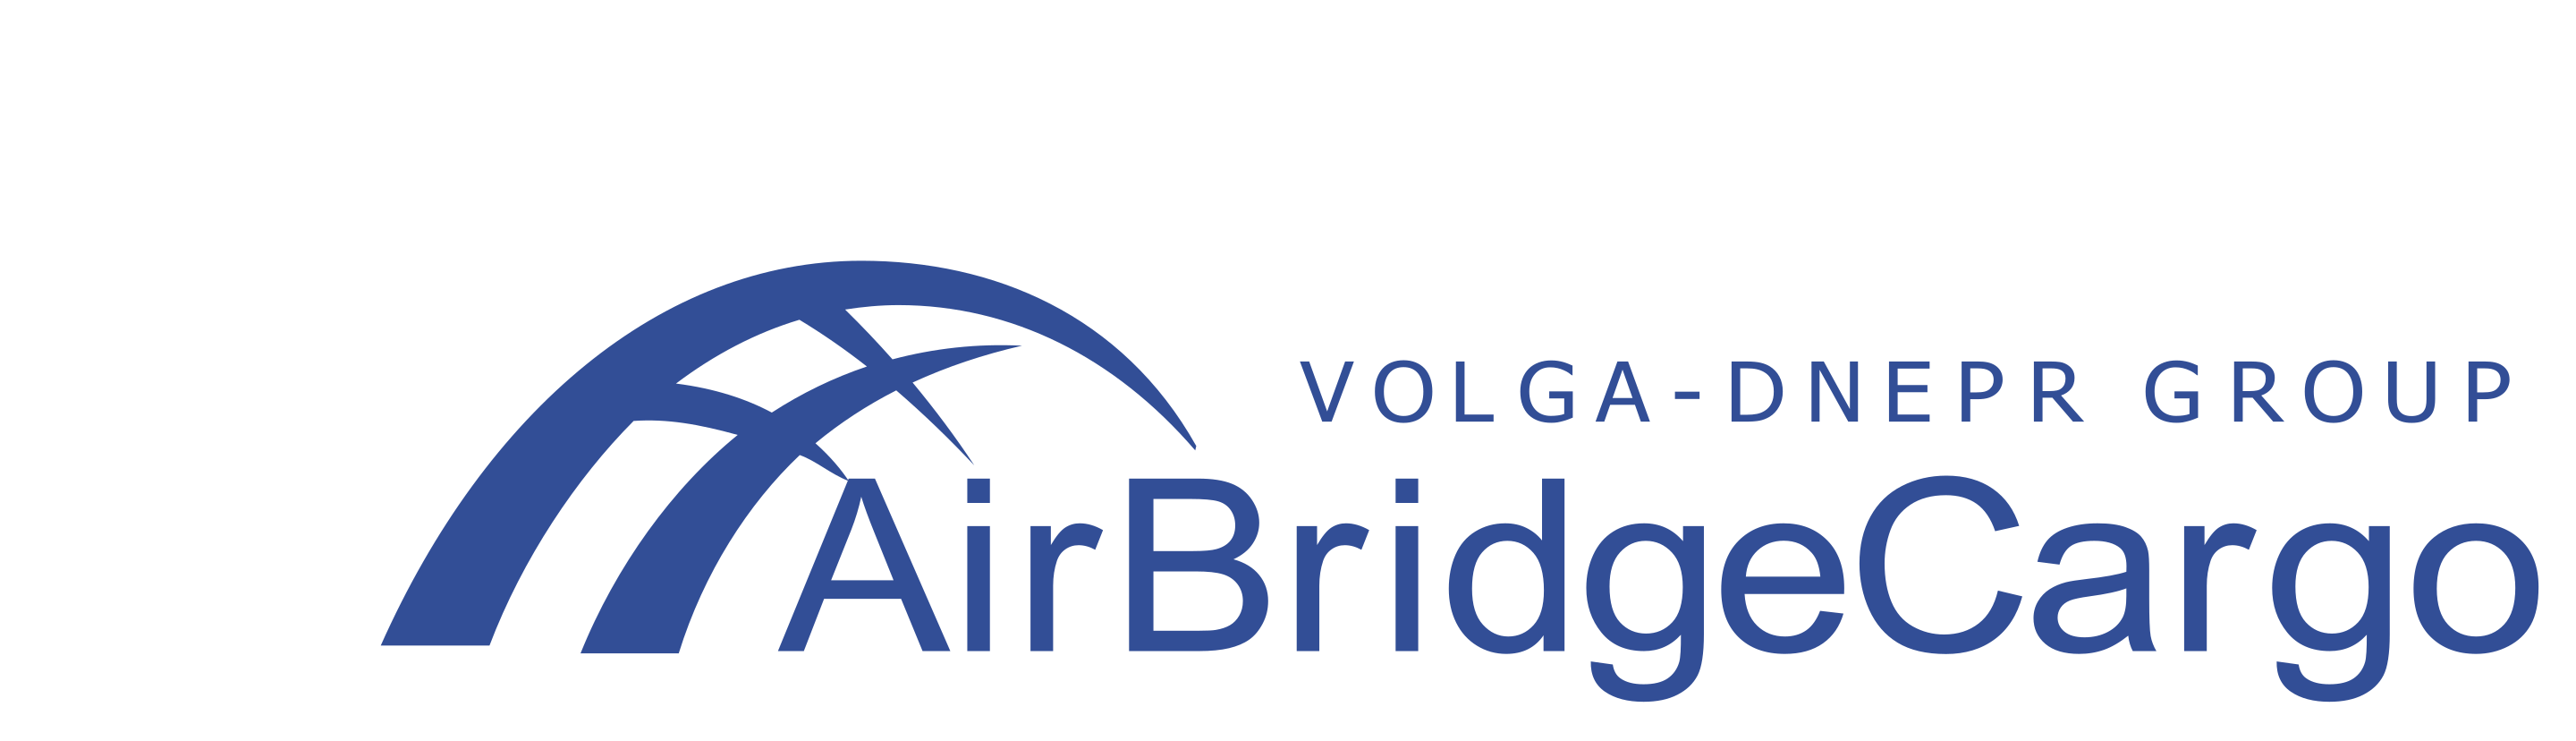 Волга-Днепр - AirBridgeCargo - ЭйрБриджКарго - авиакомпания